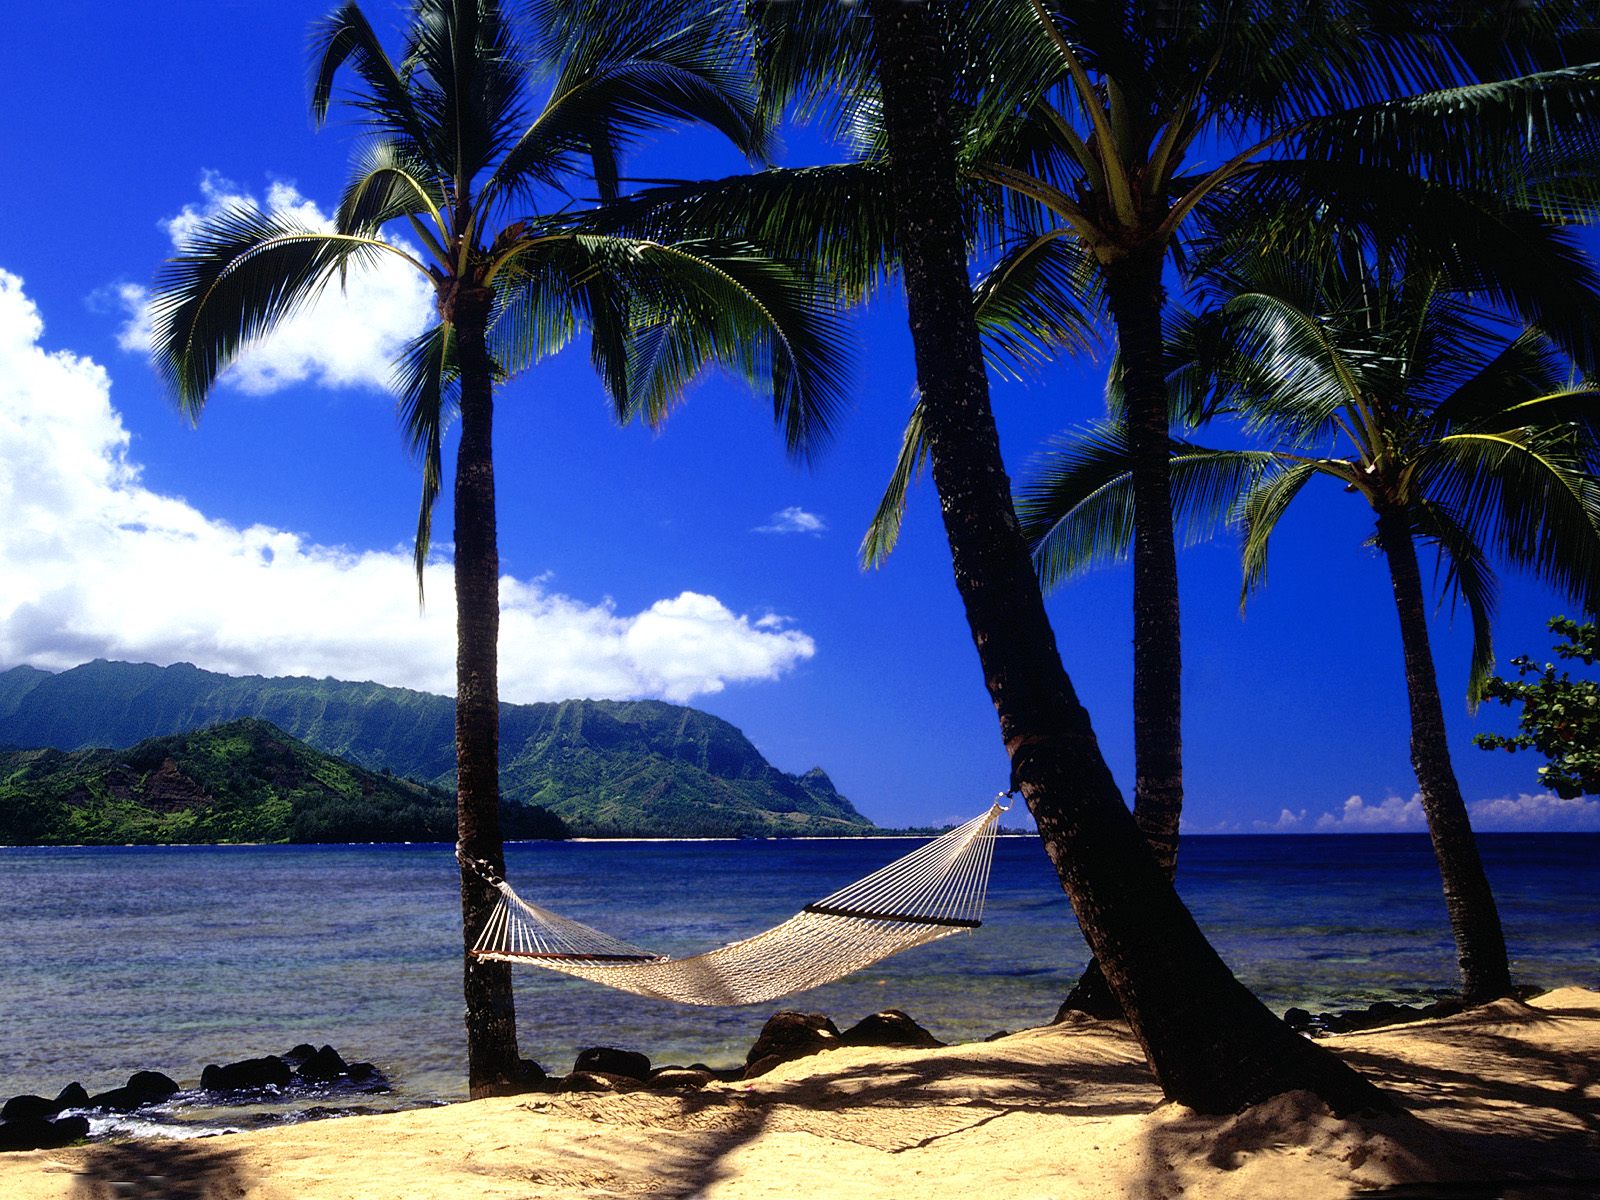 Afternoon Nap, Kauai, Hawaii